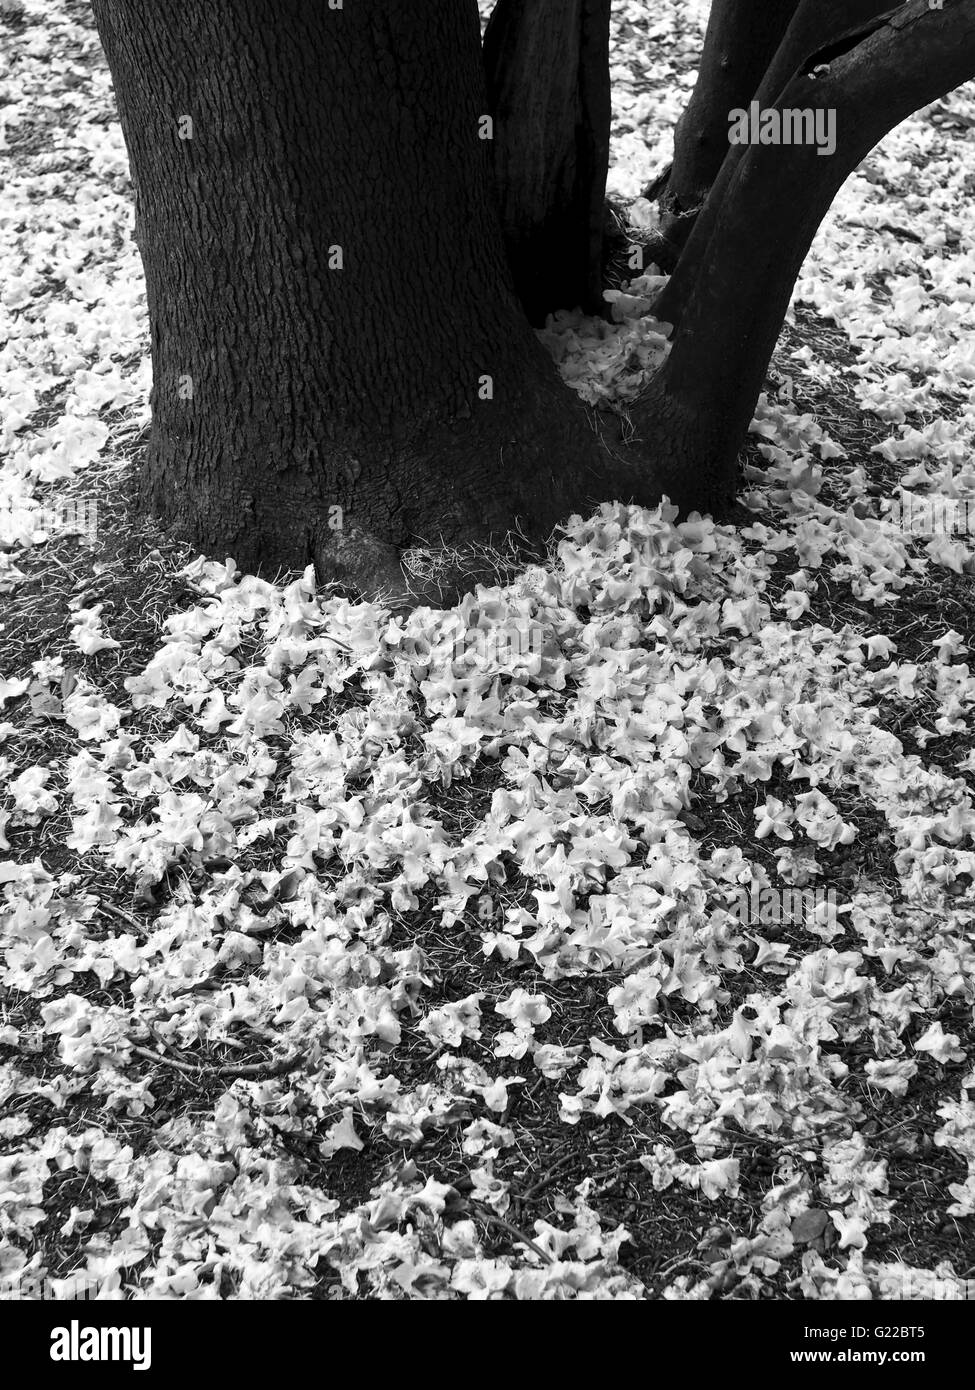 Les feuilles de Rhododendron sur le sol autour d'un tronc d'arbre Banque D'Images